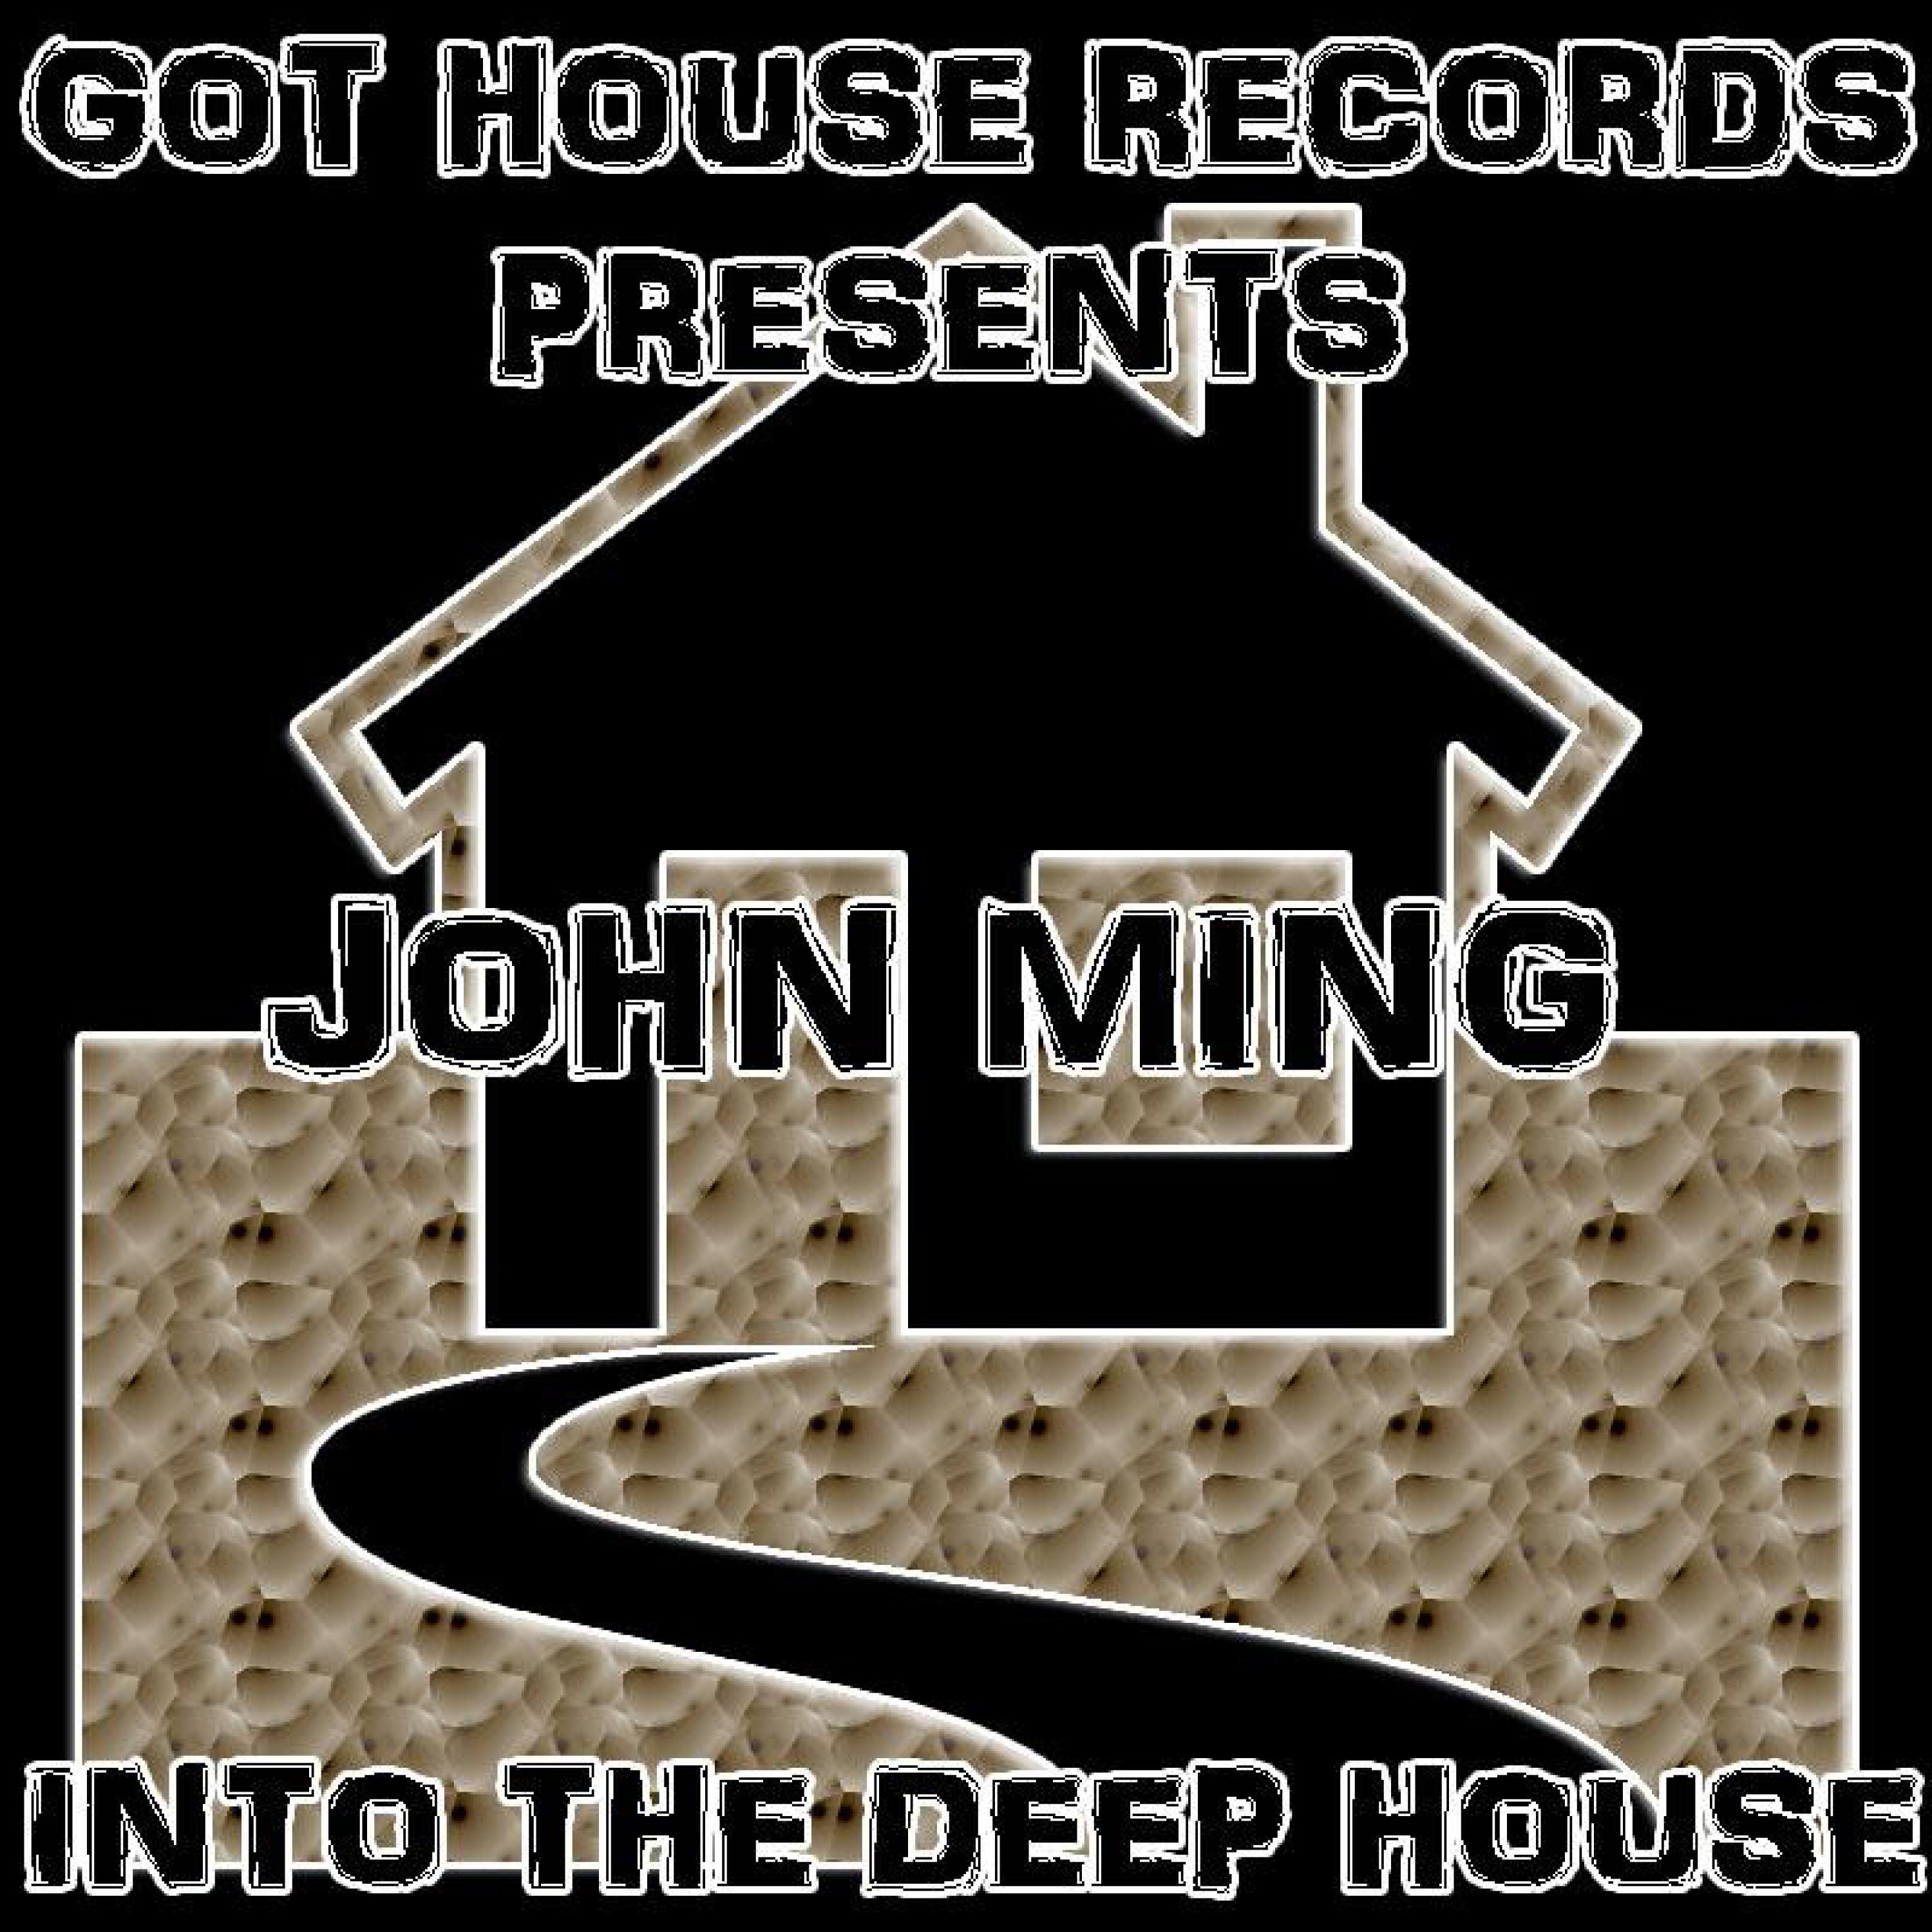 John Ming - Into The Deep House (Original Mix)